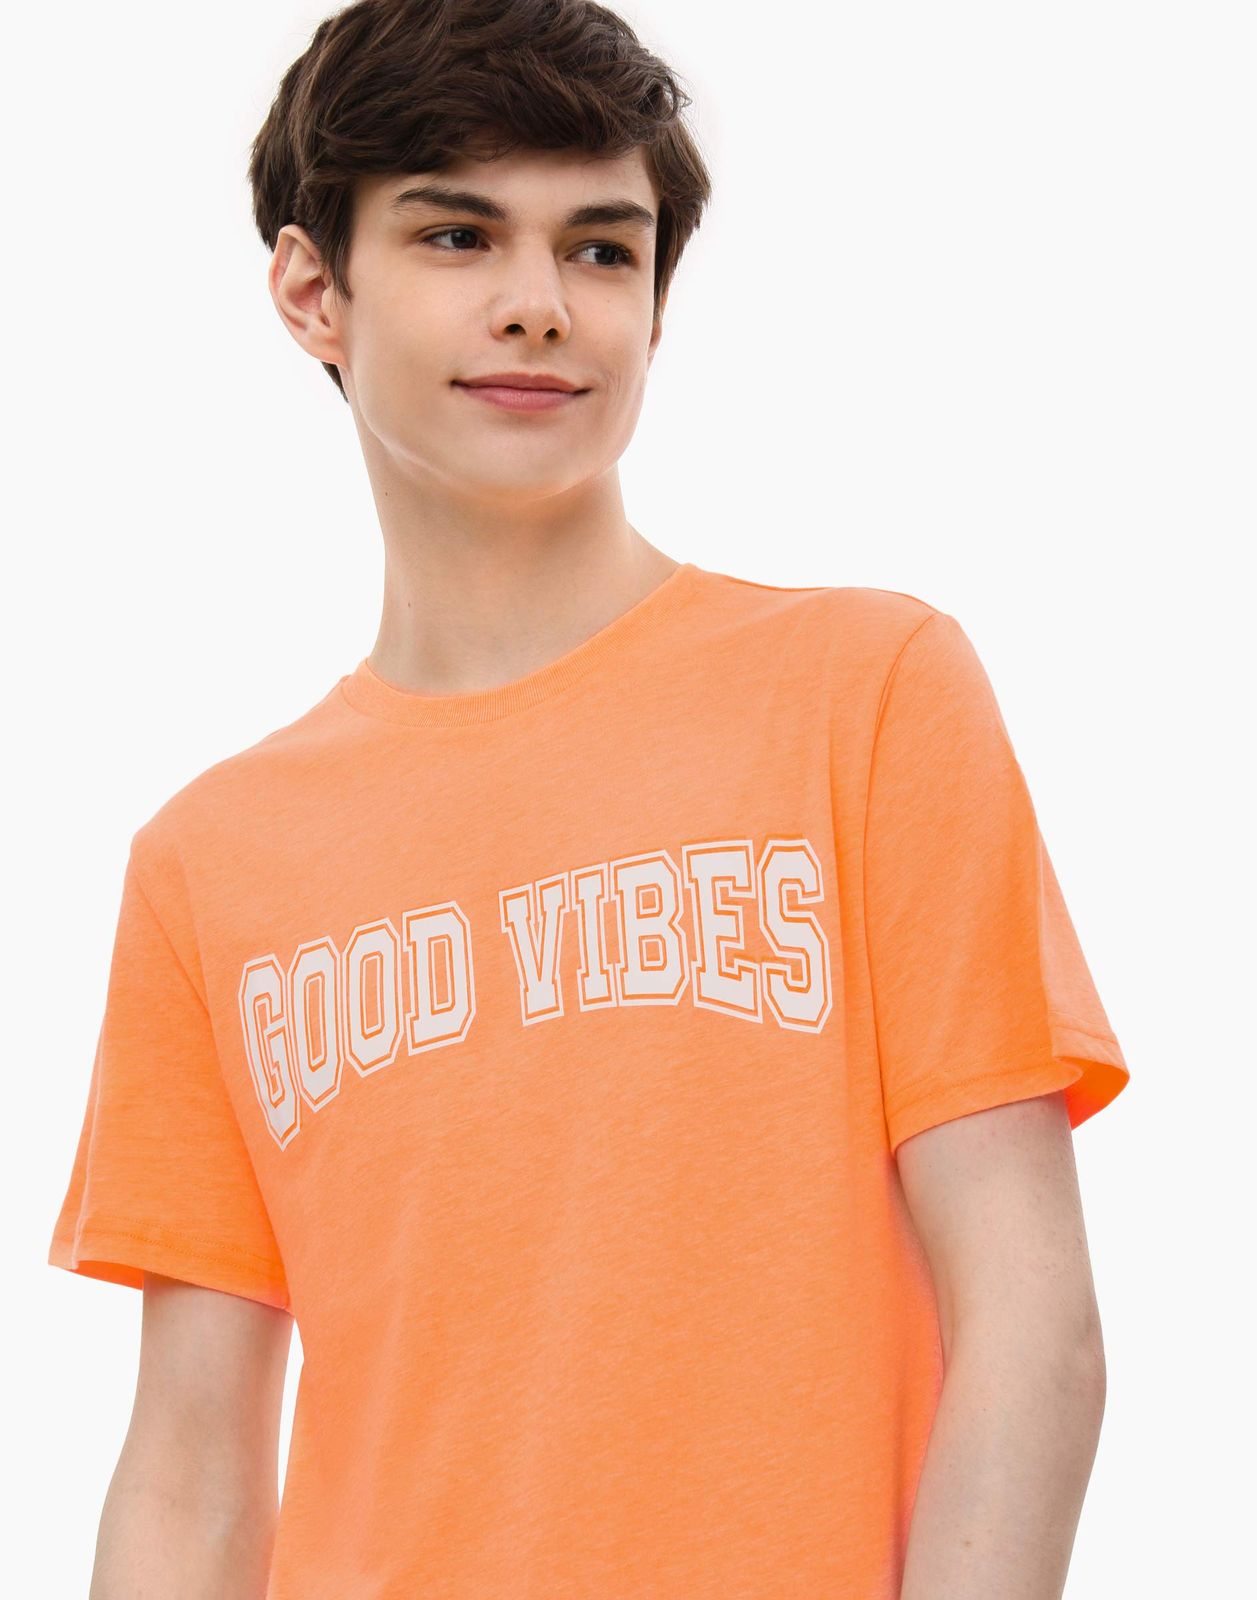 Футболка Standard с вышивкой Good Vibes для мальчика BKT014055 цв. оранжевый р.152